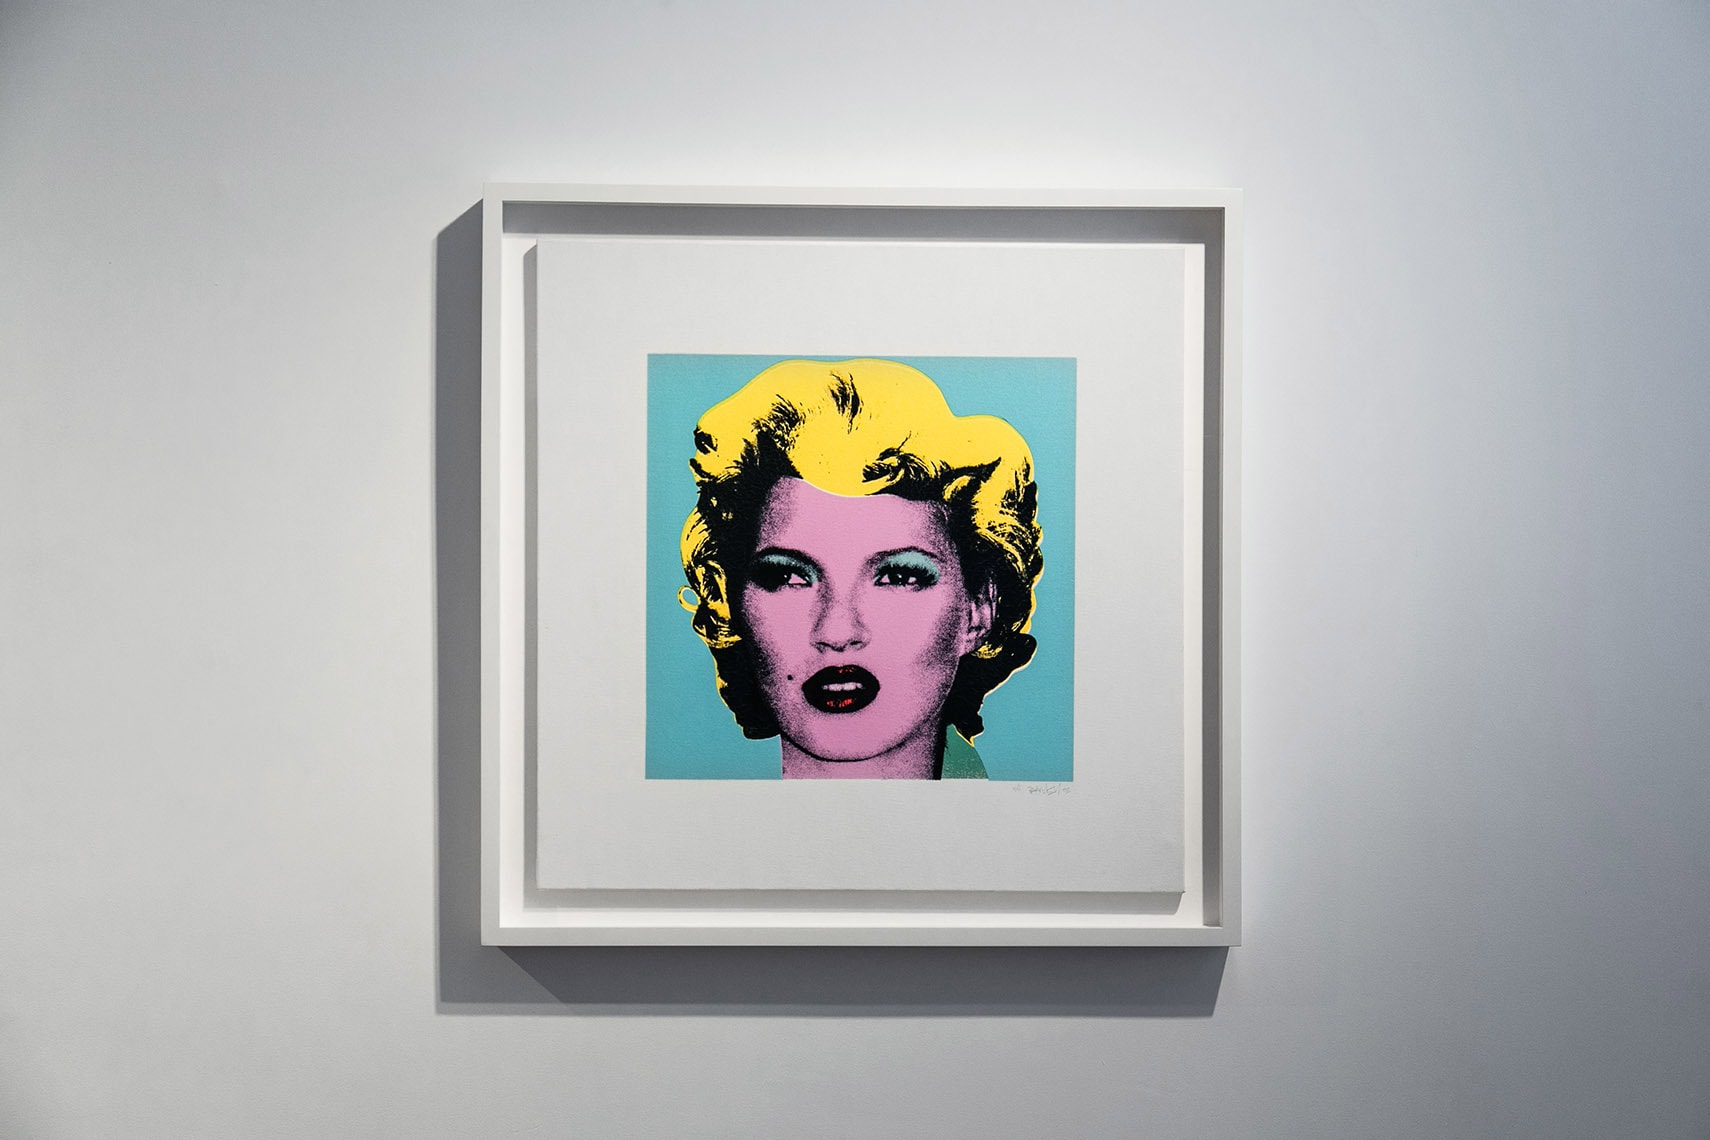 Banksy "Greatest Hits" Exhibition Lazinc London Closer Look Inside Famous Art Pieces